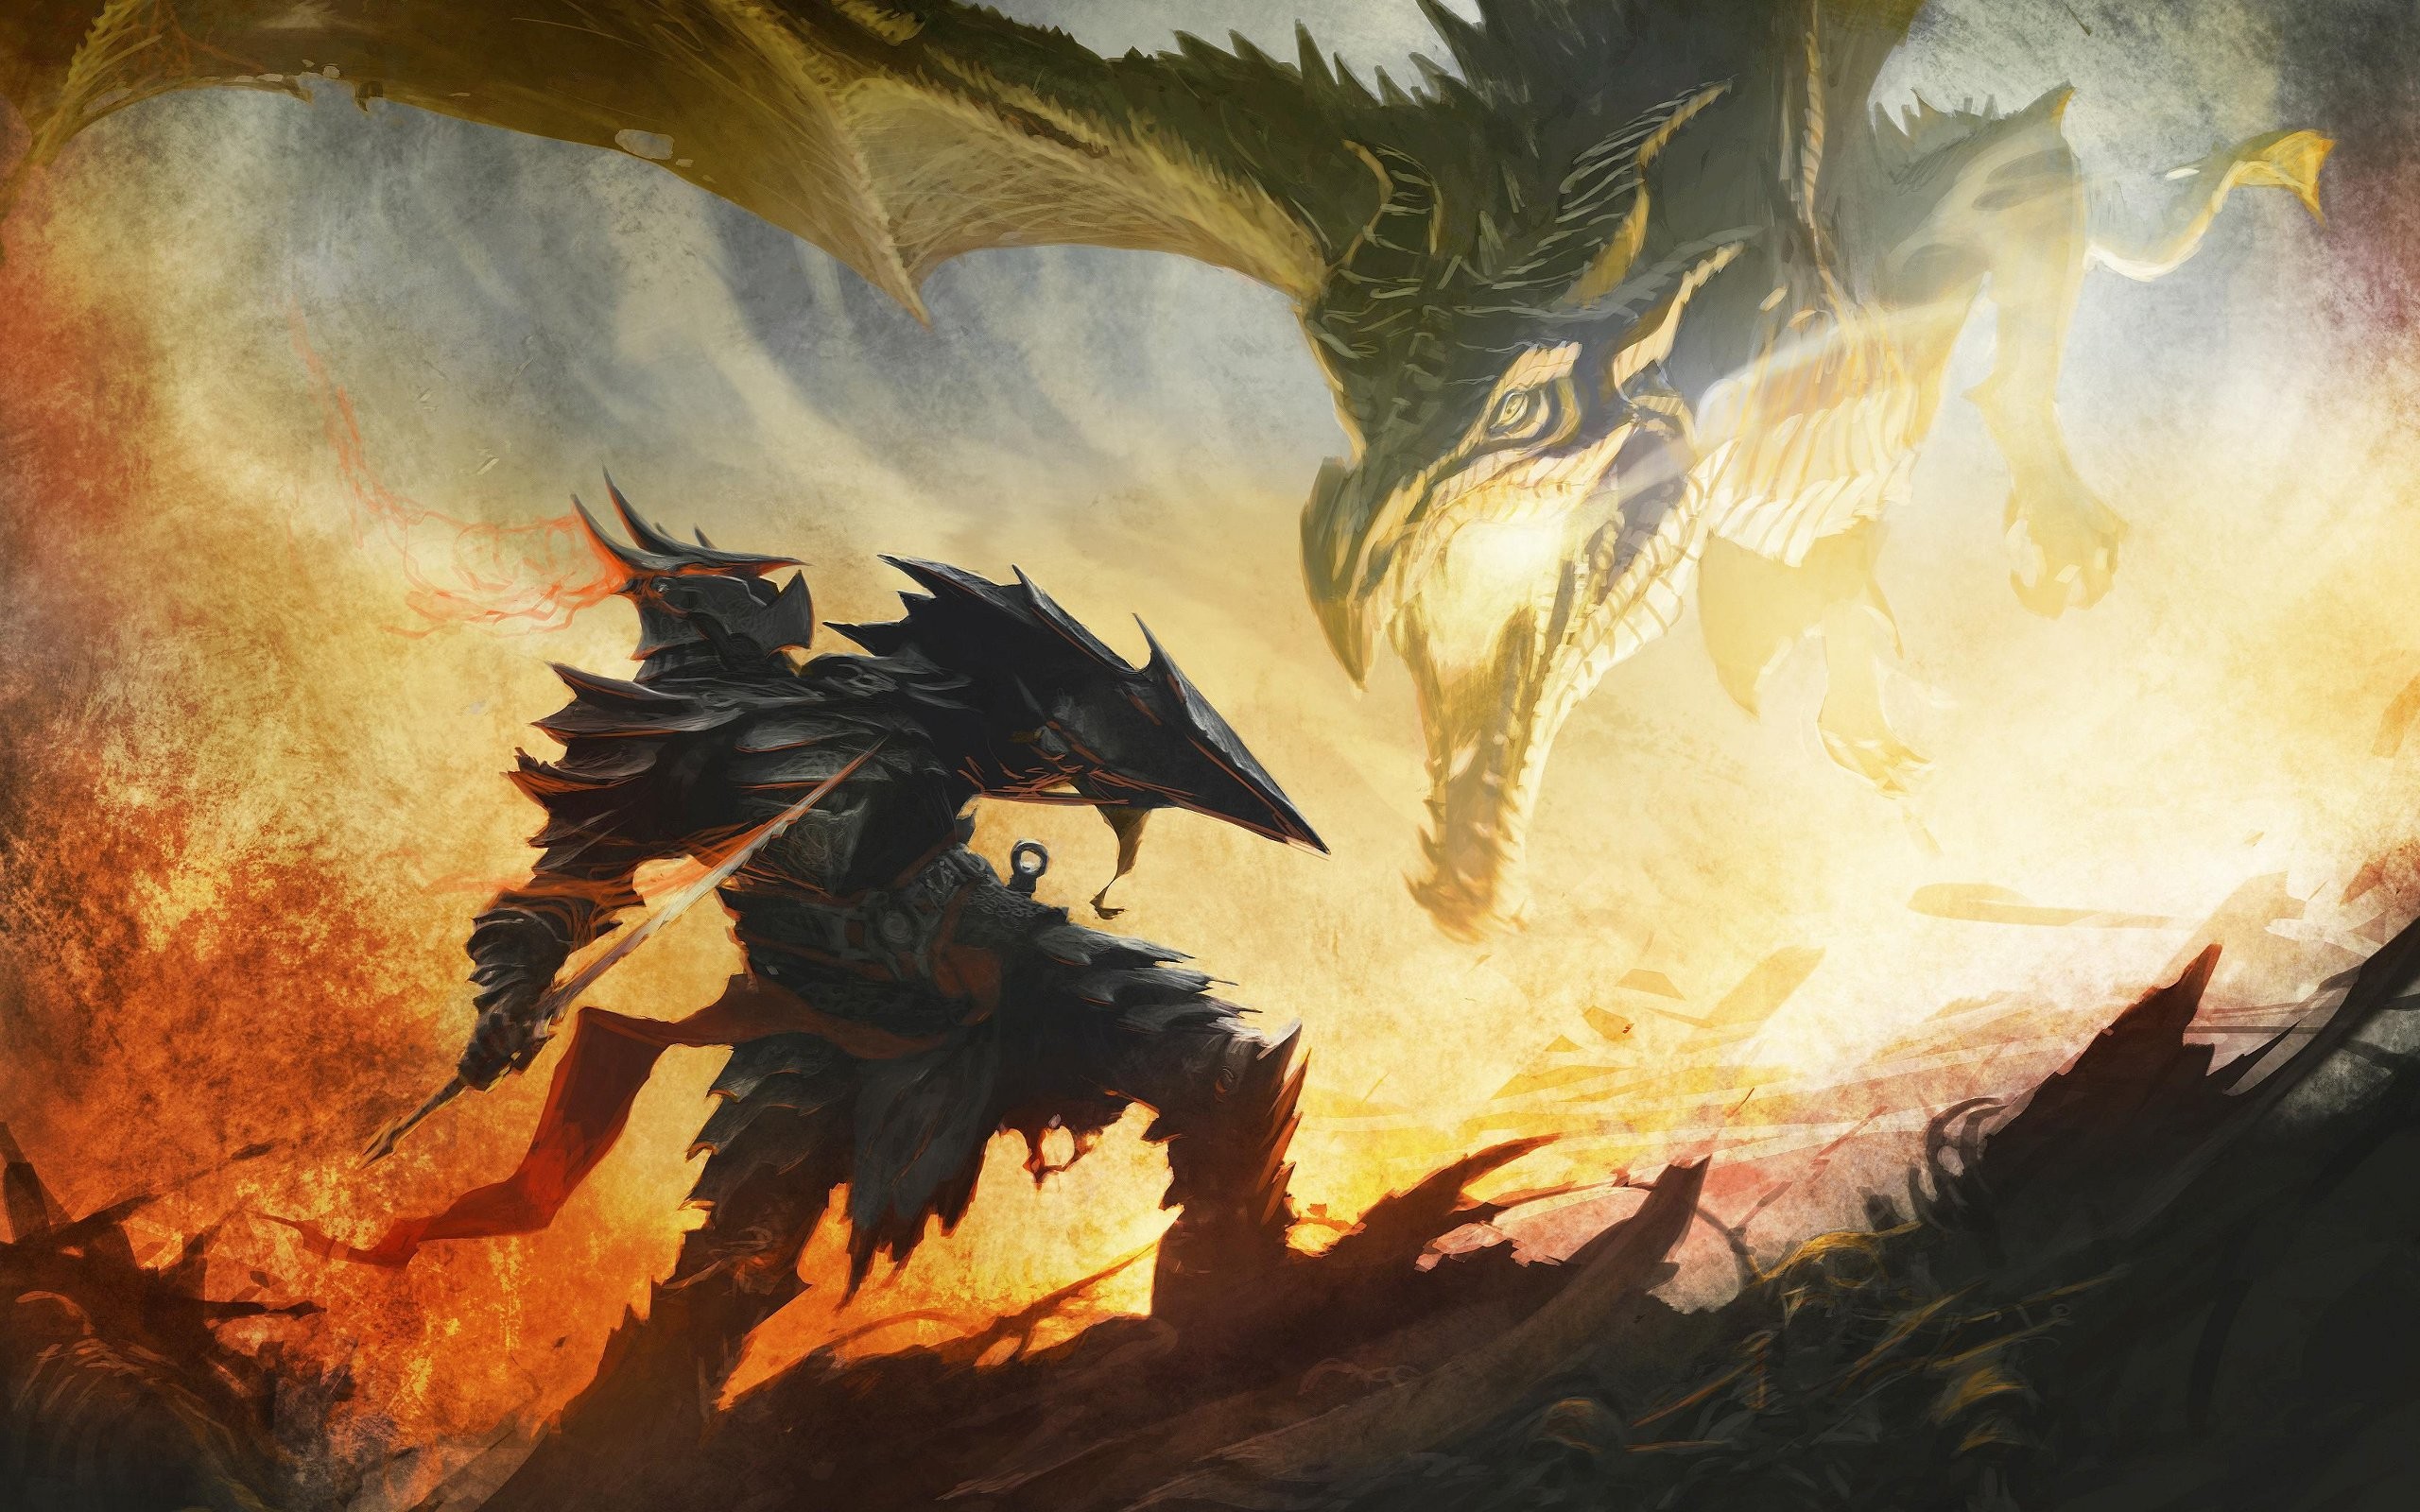 крылья, драконы, огонь, Фэнтази, доспехи, произведение искусства, воины, мечи, The Elder Scrolls V : Skyrim, игры - обои на рабочий стол